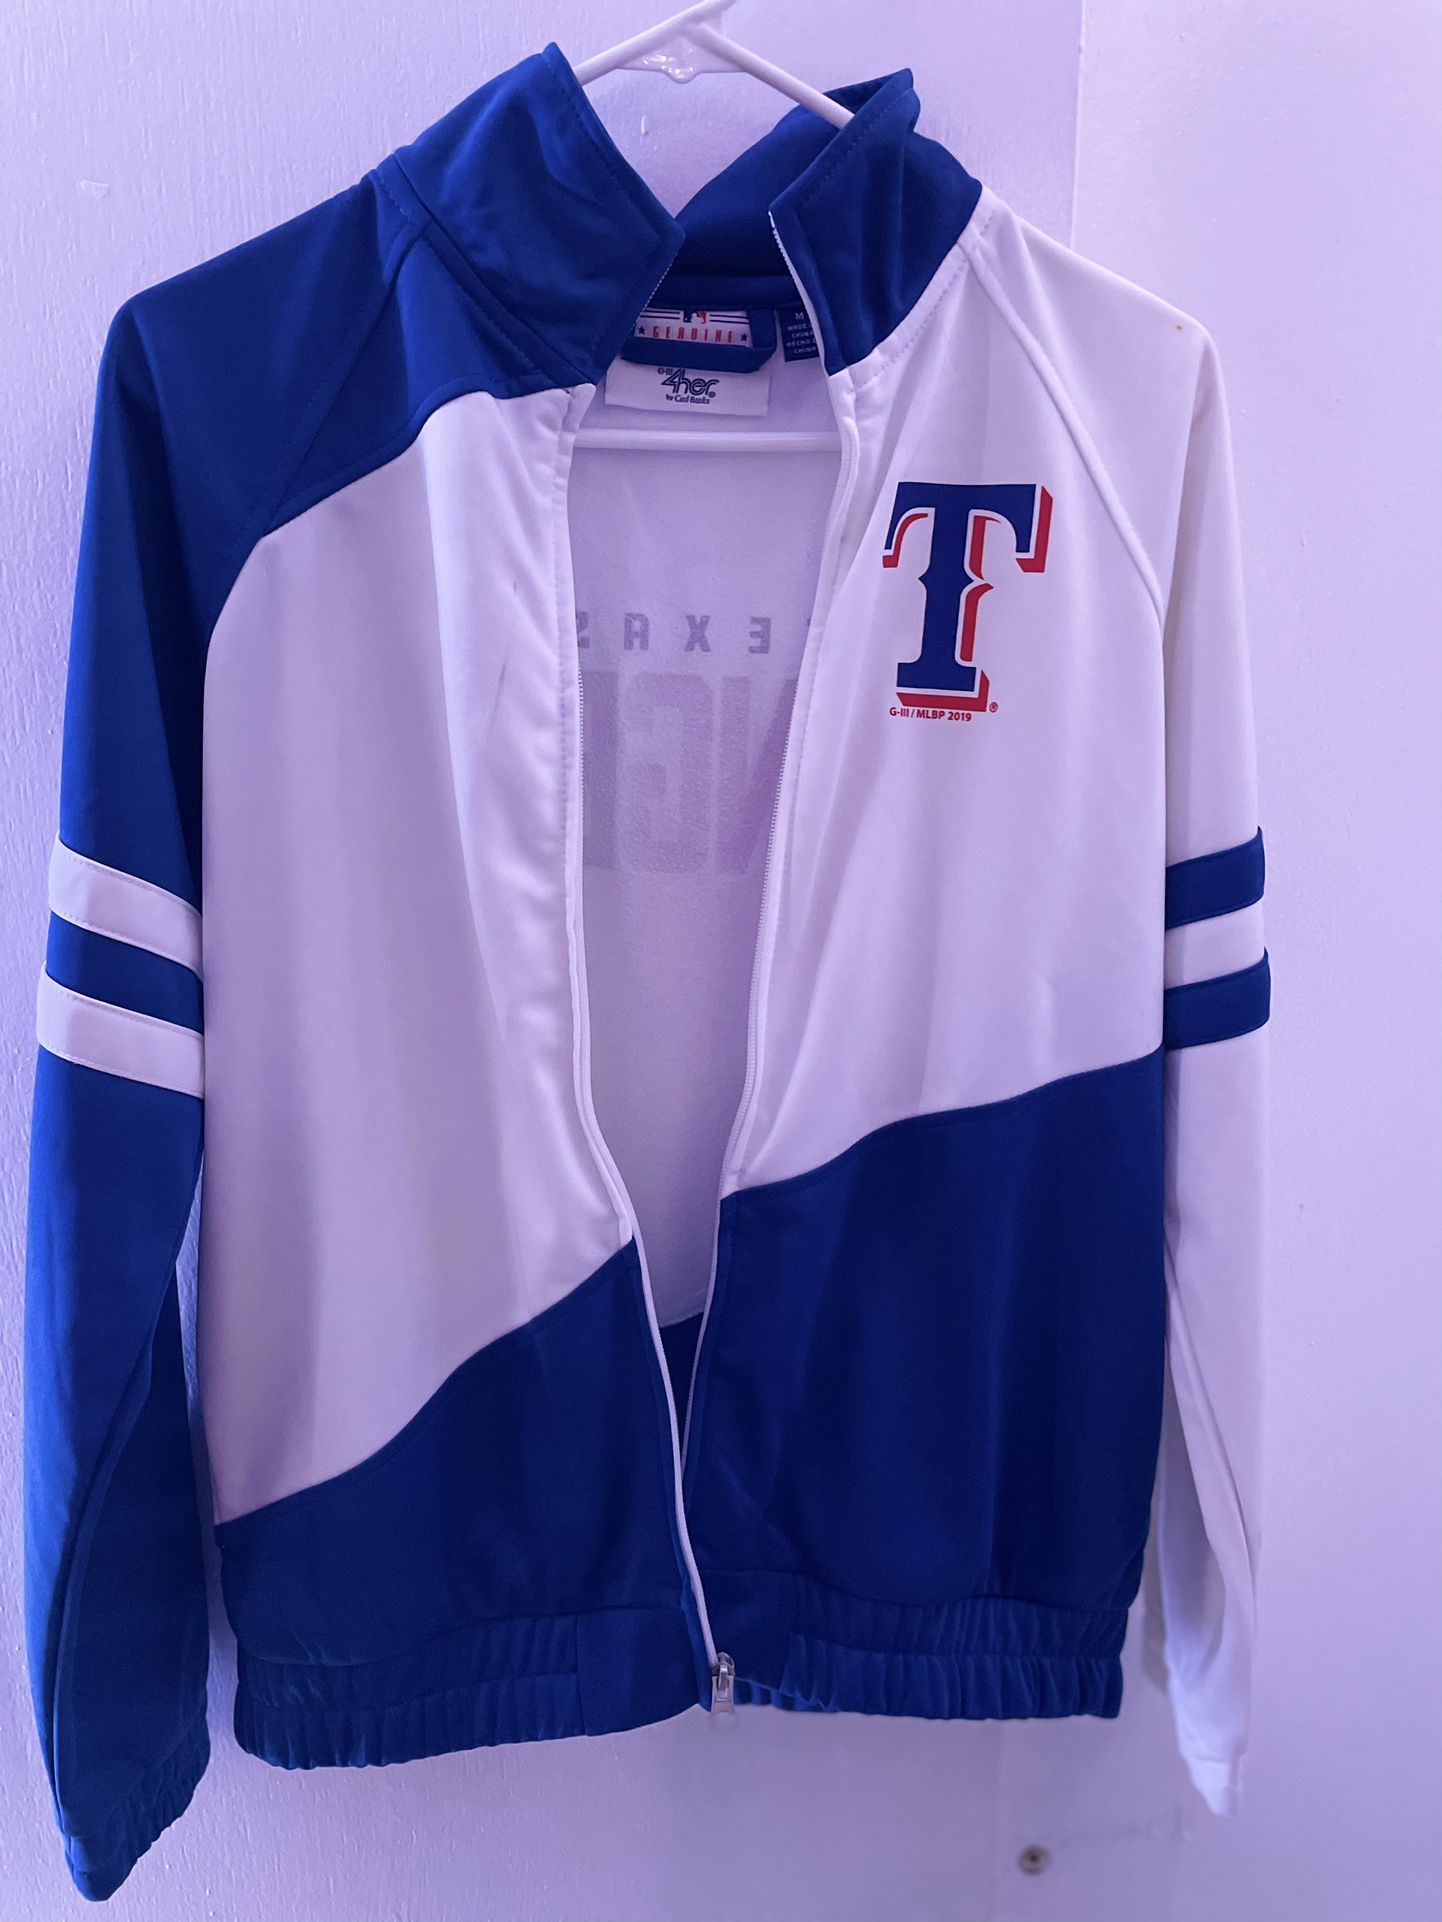 Woman’s Texas Rangers Jacket